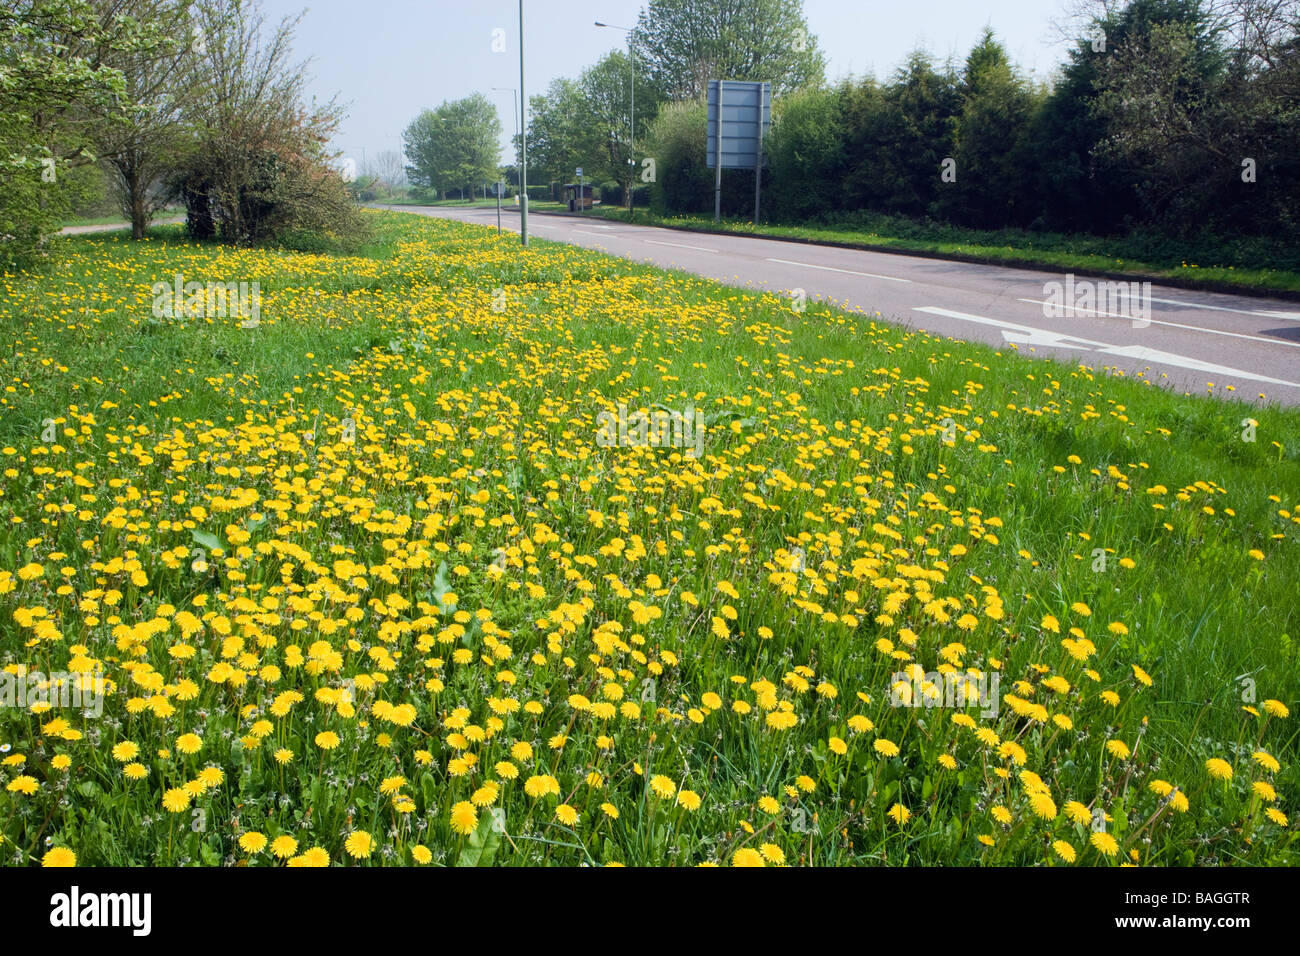 Dandelions beside road. Surrey, UK Stock Photo